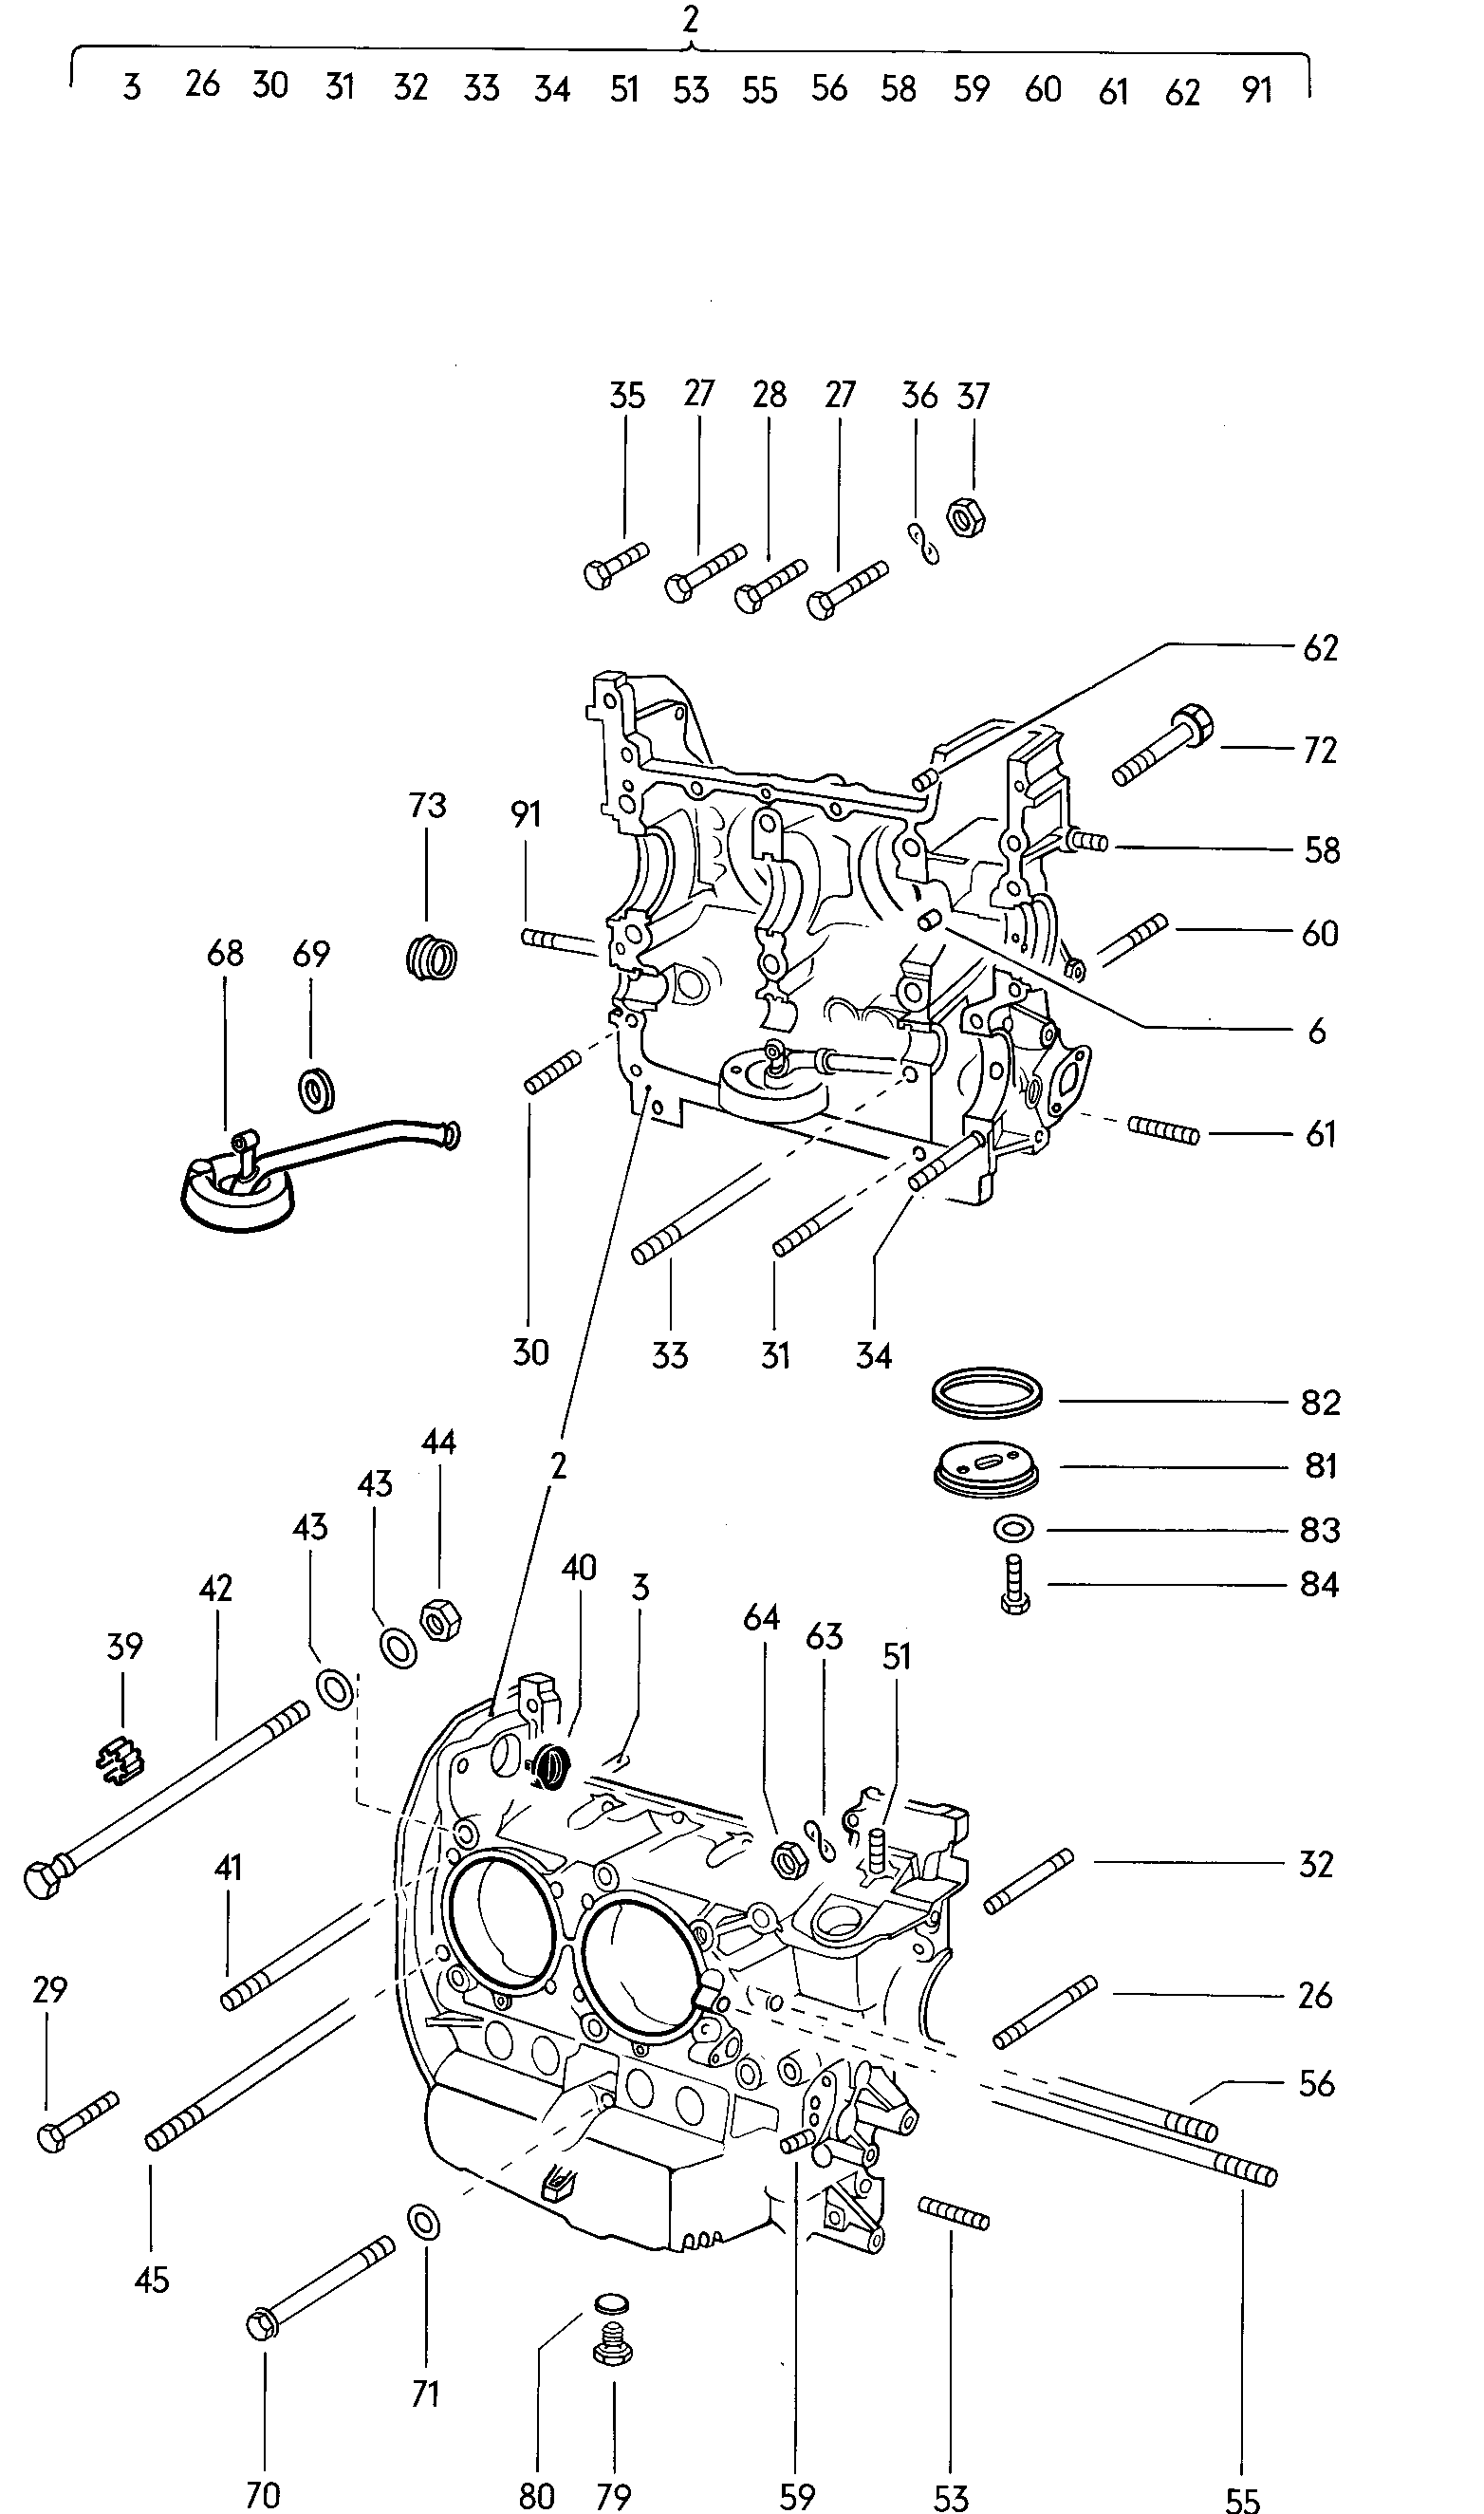 elementy mocujace silnik
i skrzynie biegow - Typ 2/syncro(T2)  